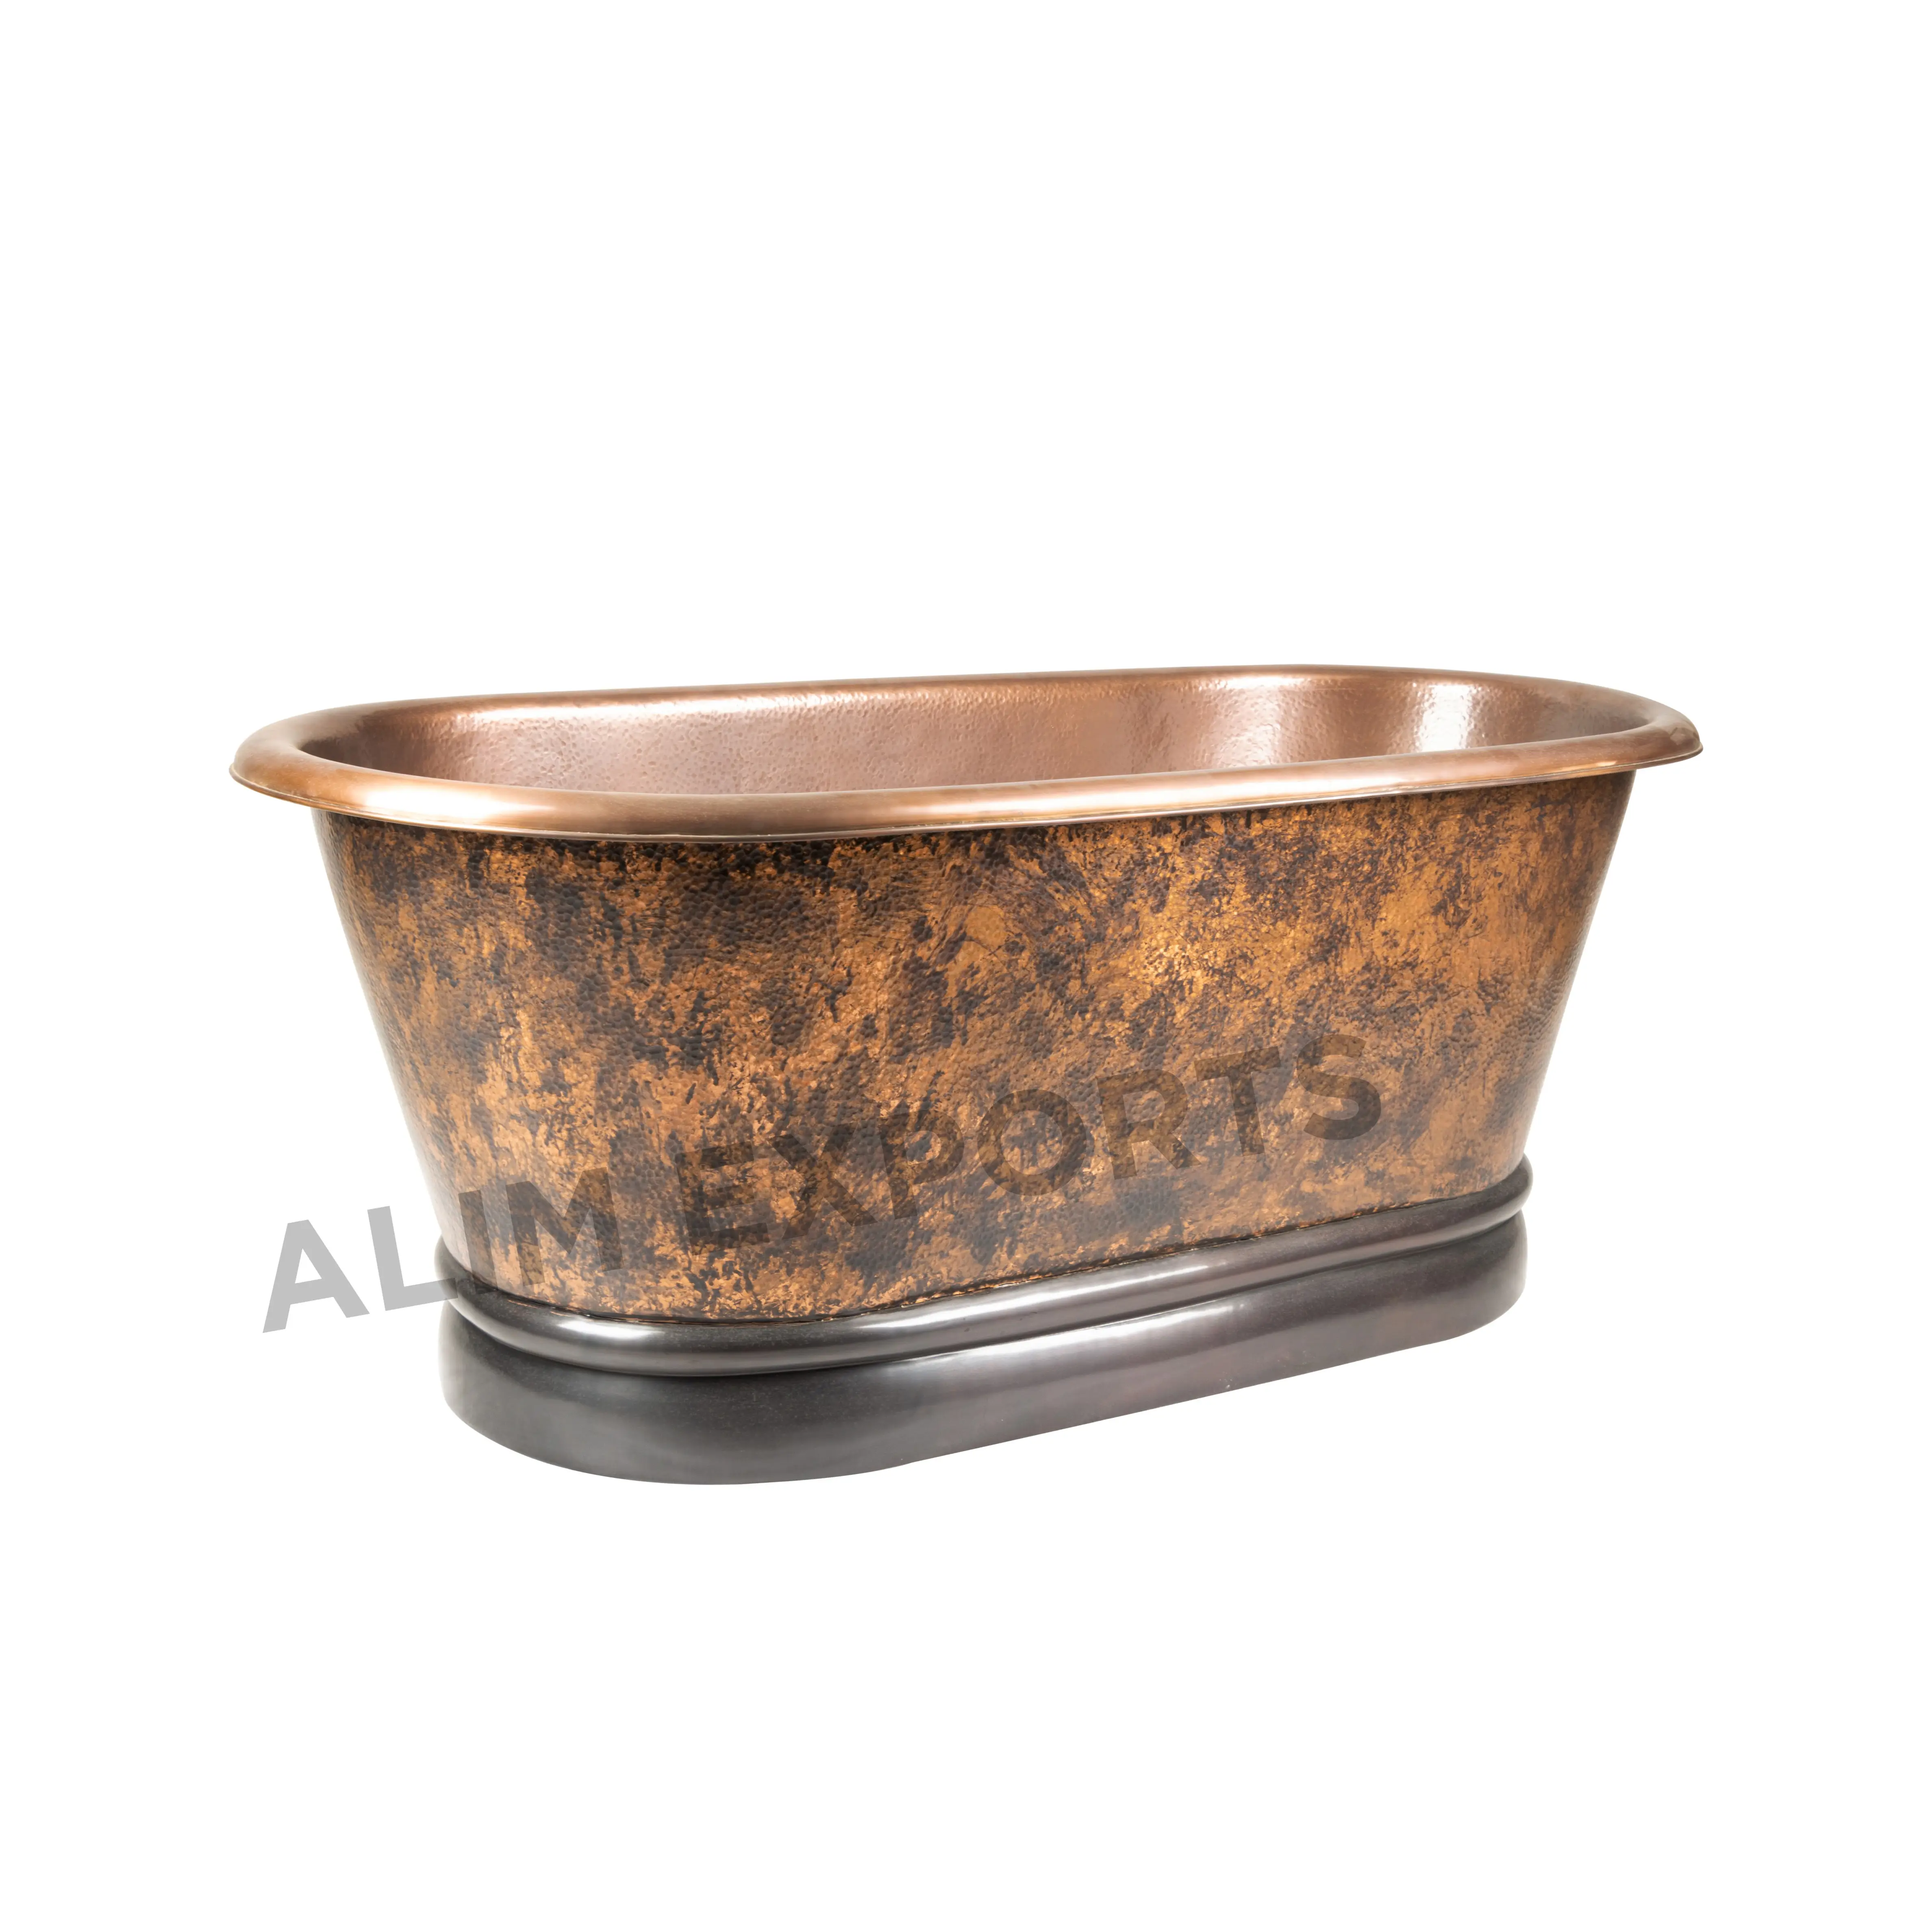 Venta al por mayor de bañeras de material de cobre puro de tamaño personalizado bañeras martilladas y bañeras de hidromasaje superficie sólida forma personalizada